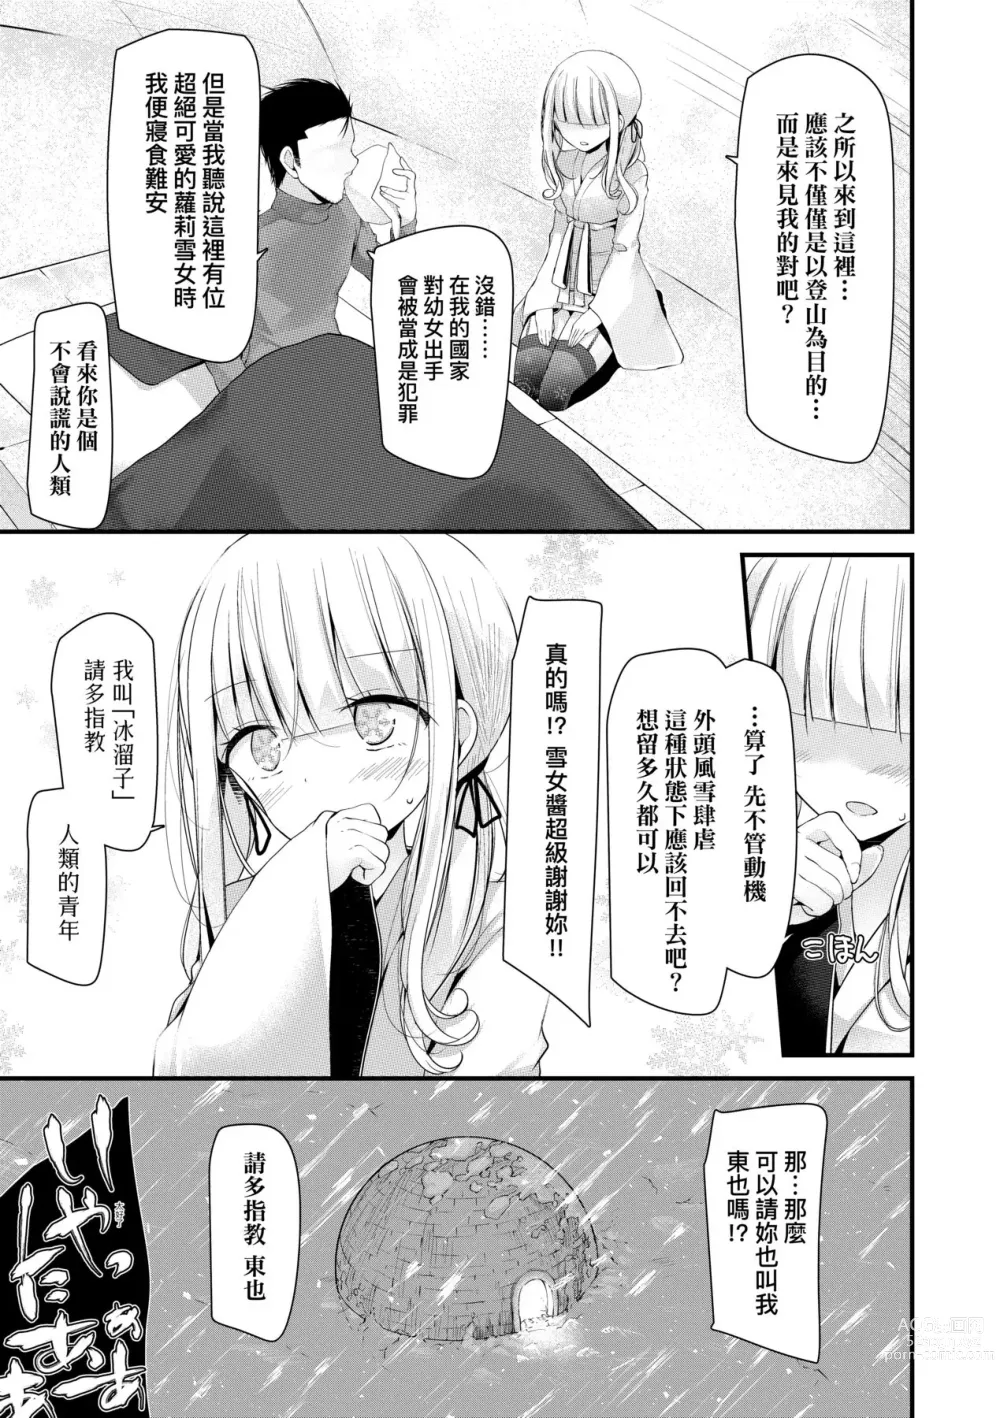 Page 10 of manga 年上的少女你也很喜歡吧? (decensored)